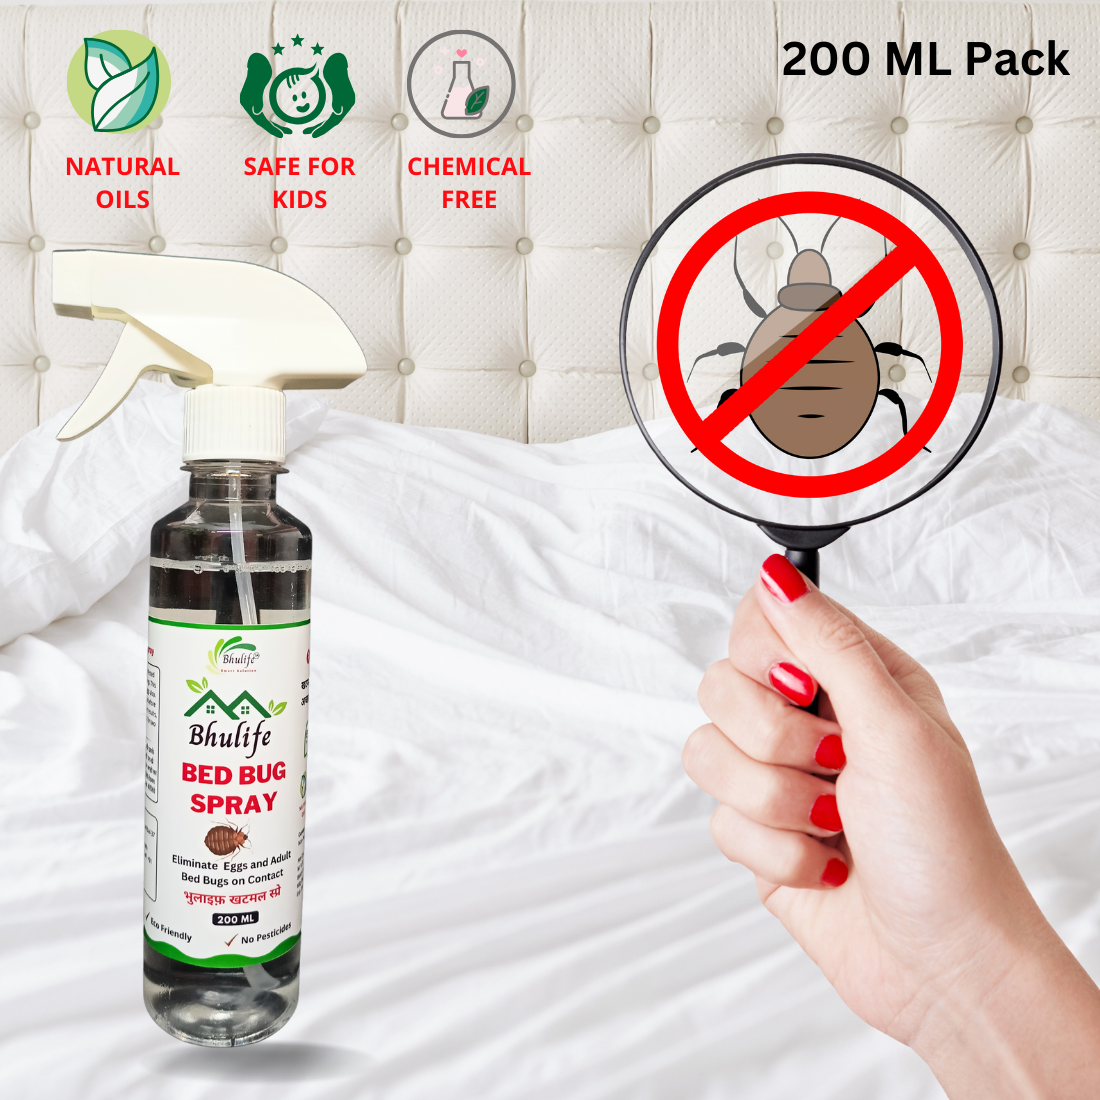 Bhulife Natural Organic Bedbug Killer Spray|Khatmal Marne Ki Dawai|Khatmal Maar 200MLx5